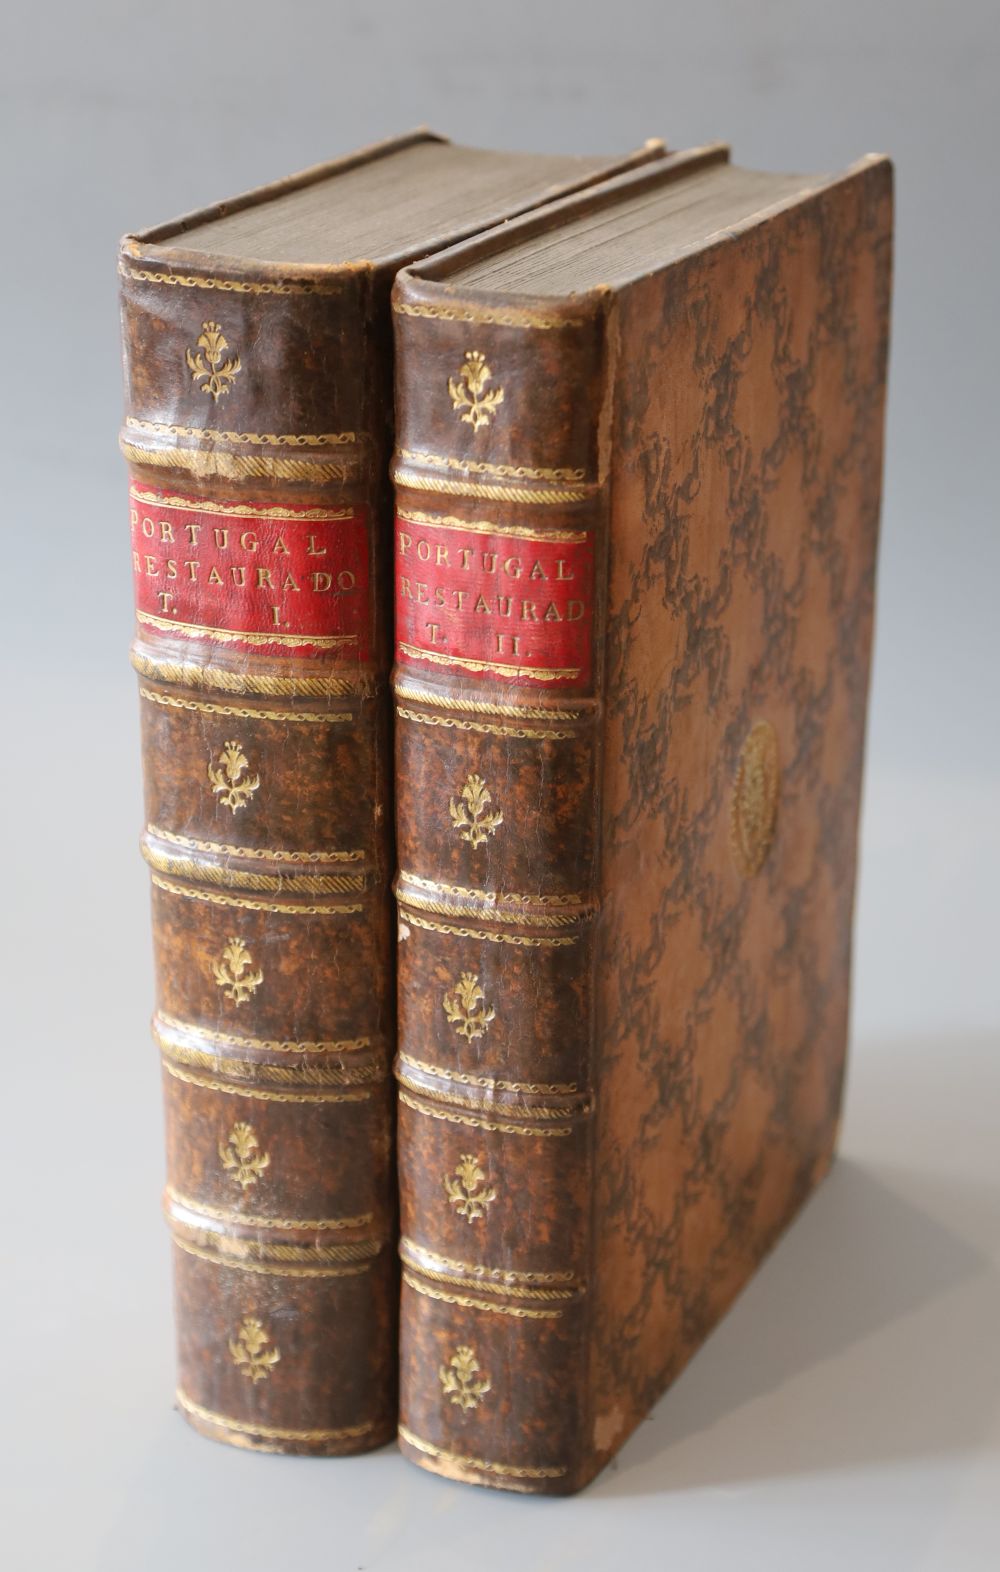 Menezes, Luiz de, Conde da Ericeira - Historia de Portugal restaurado, 2 vols, calf, quarto, Lisbon, 1698-1710